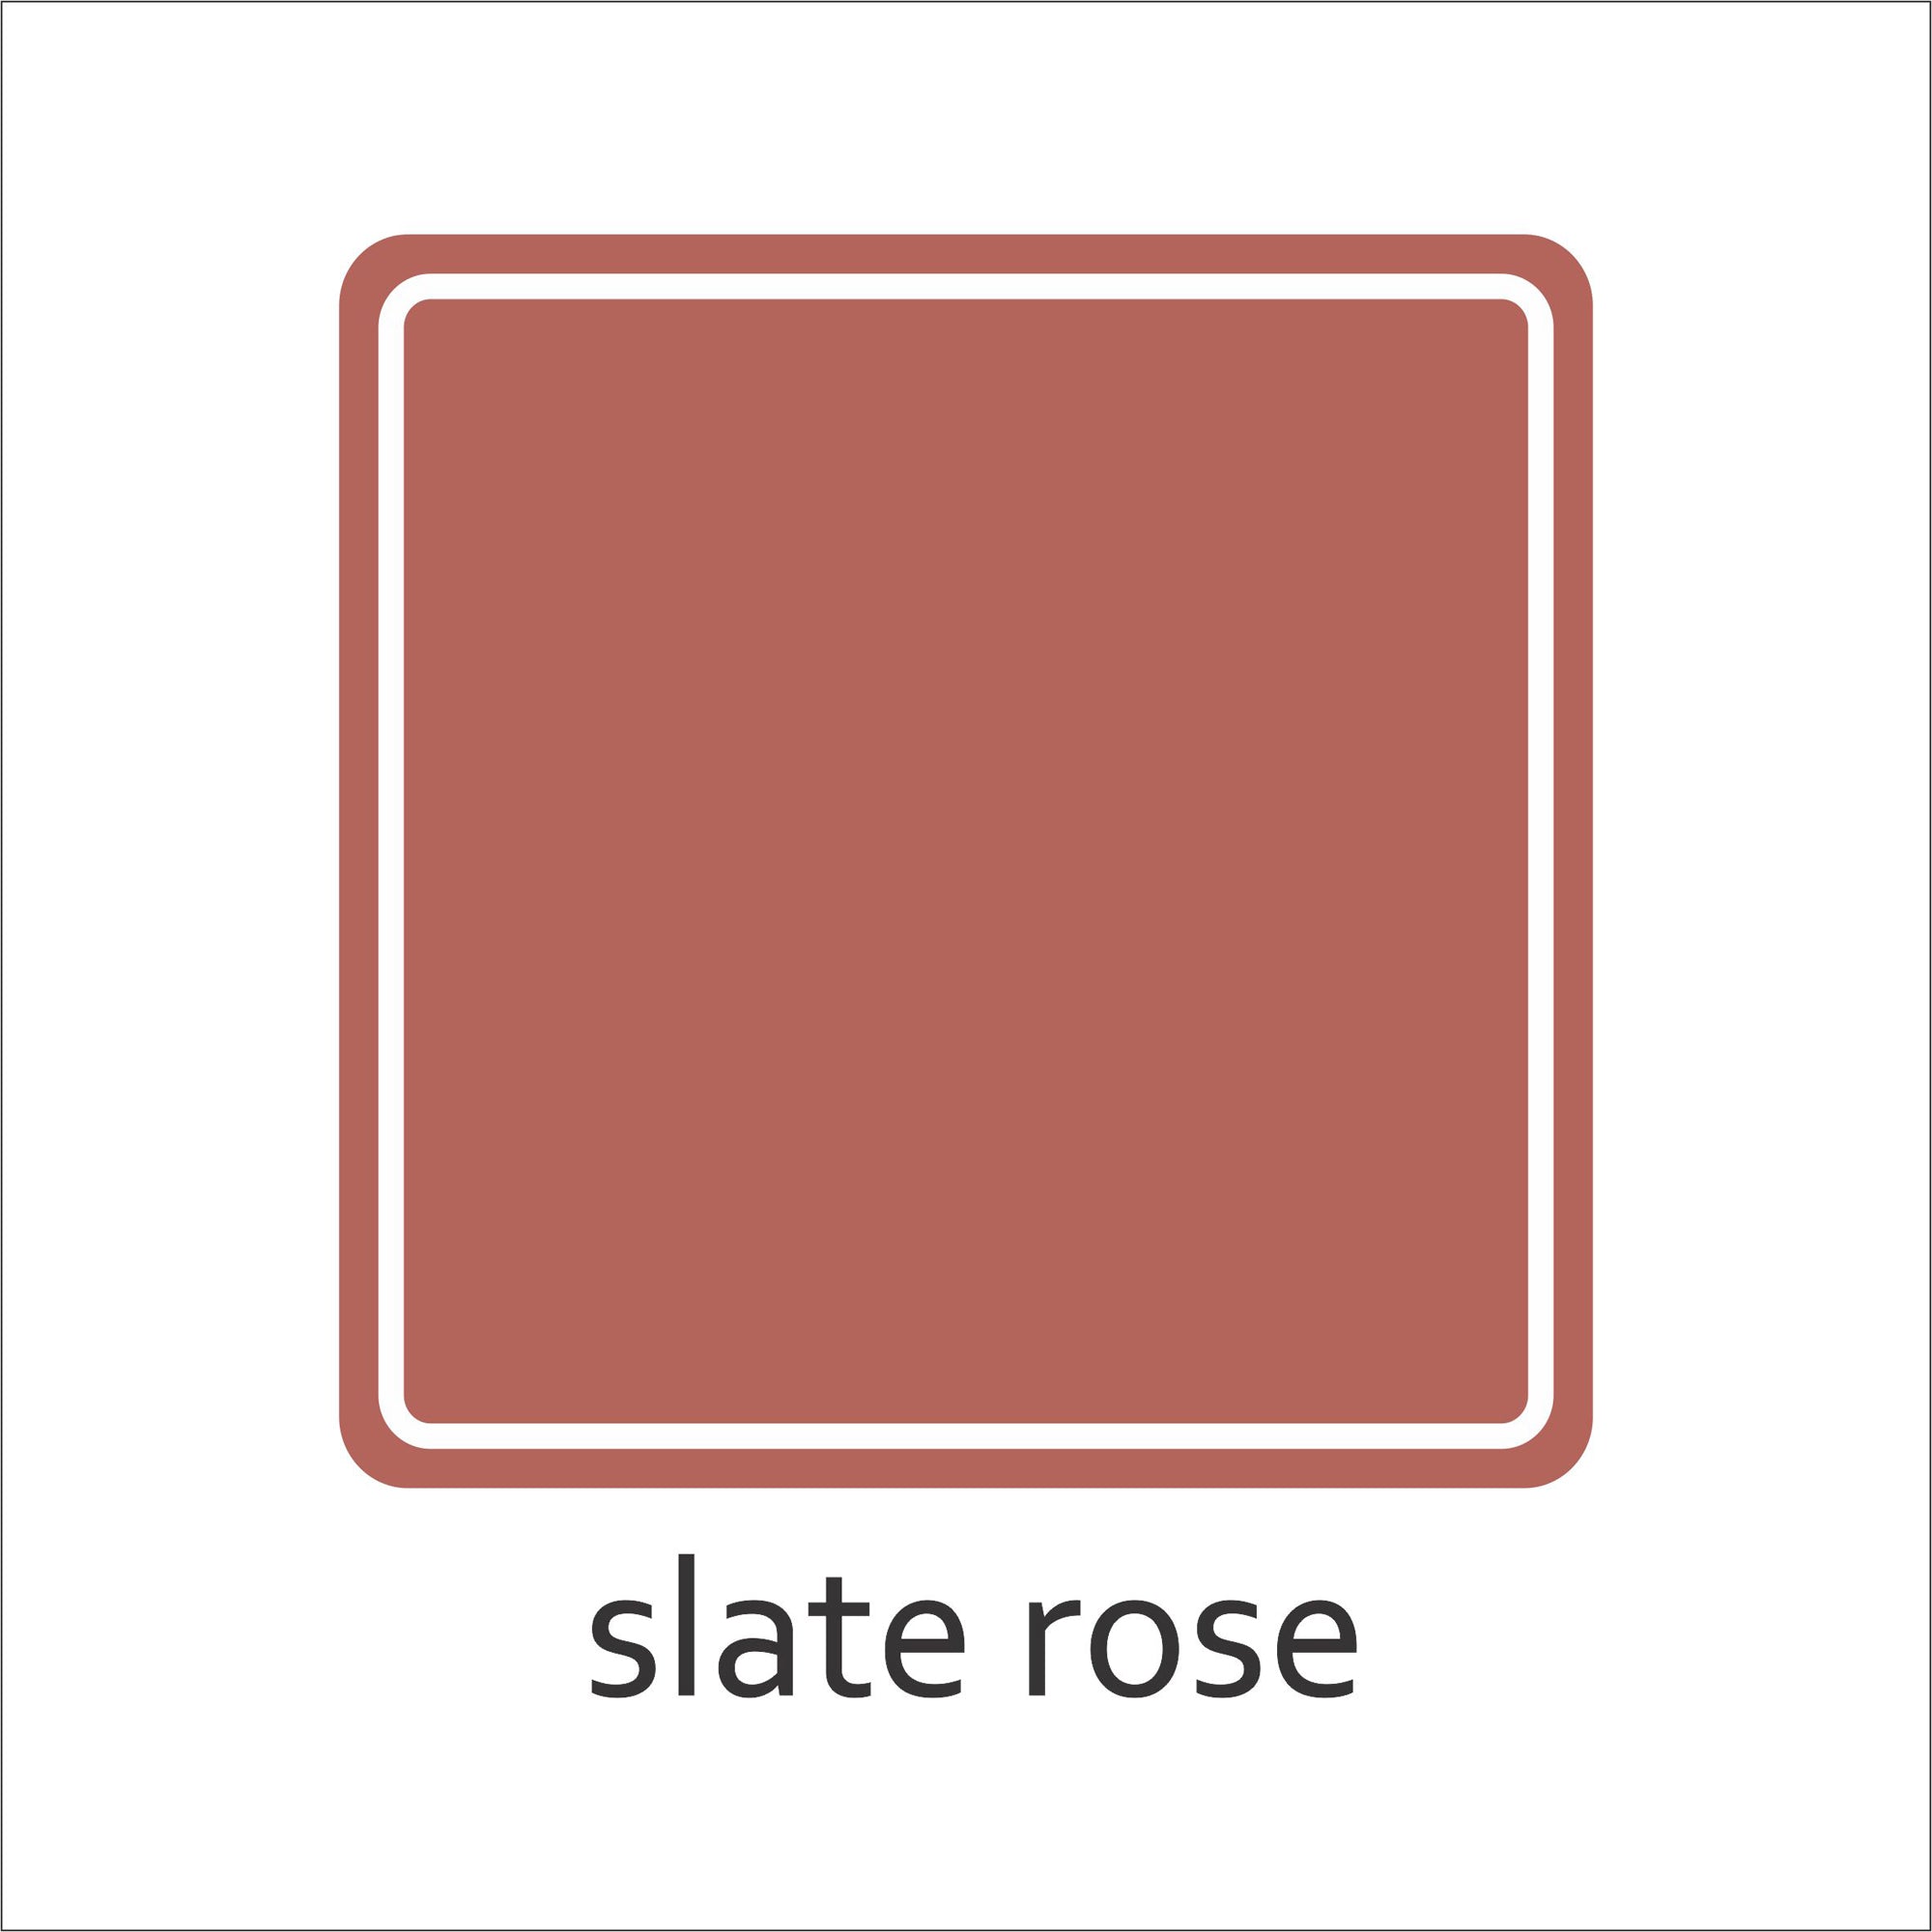 Solid Color Tile Sticker Sample Bundle (set of 3 stickers)